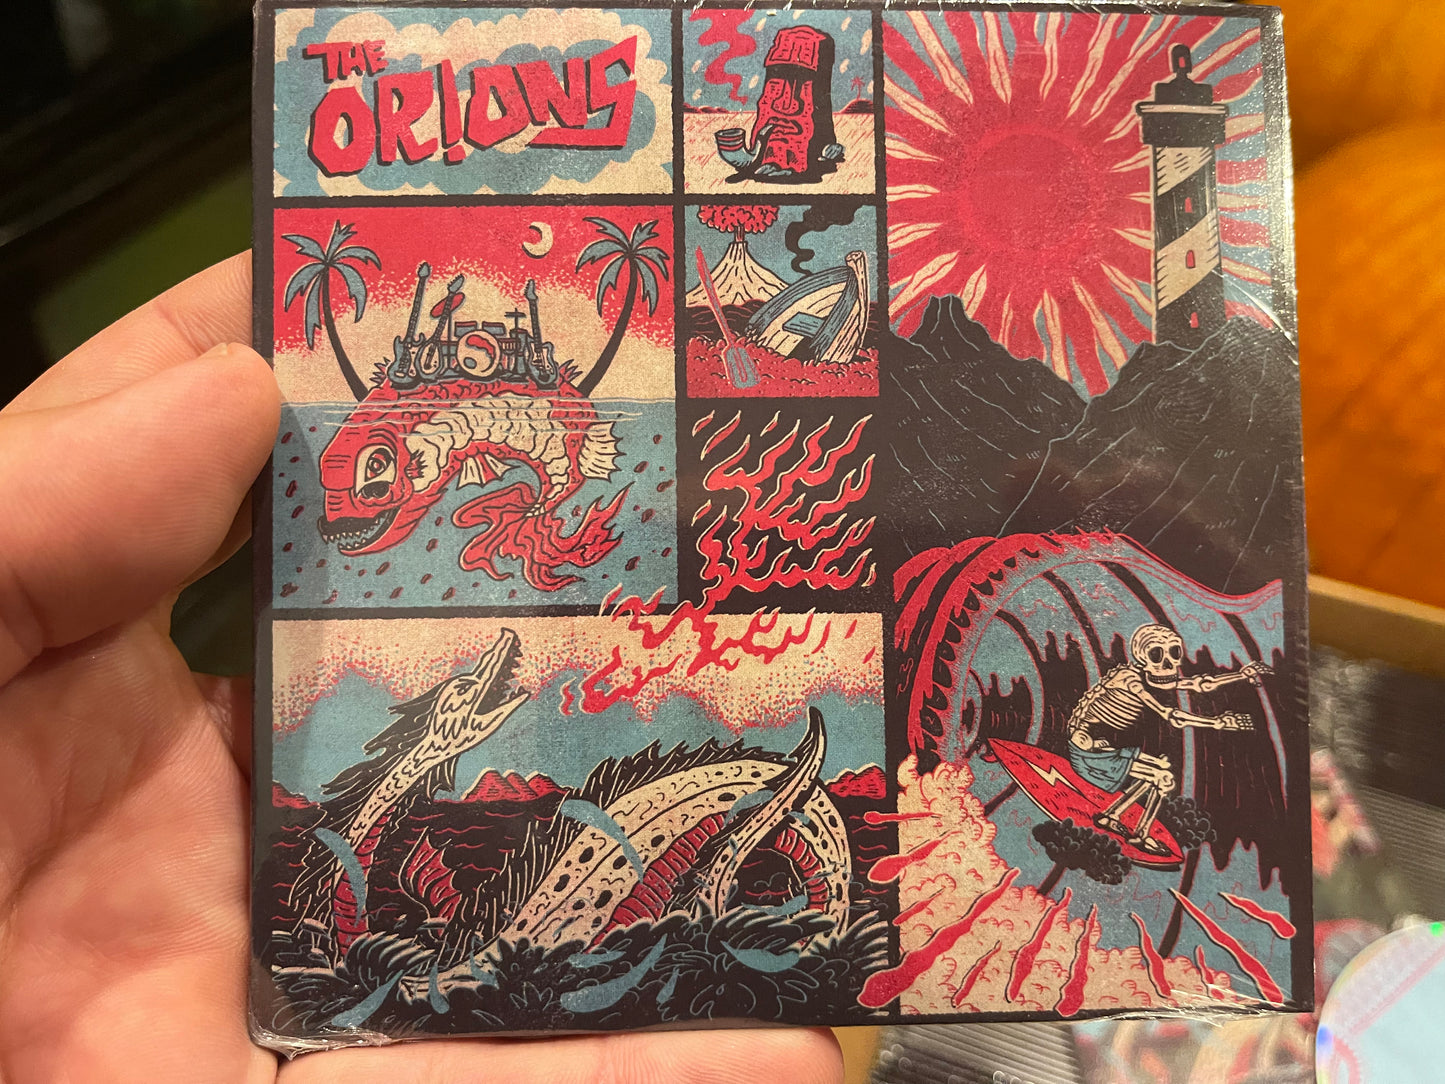 OMR-071 The Orions (Vinyl & CD)